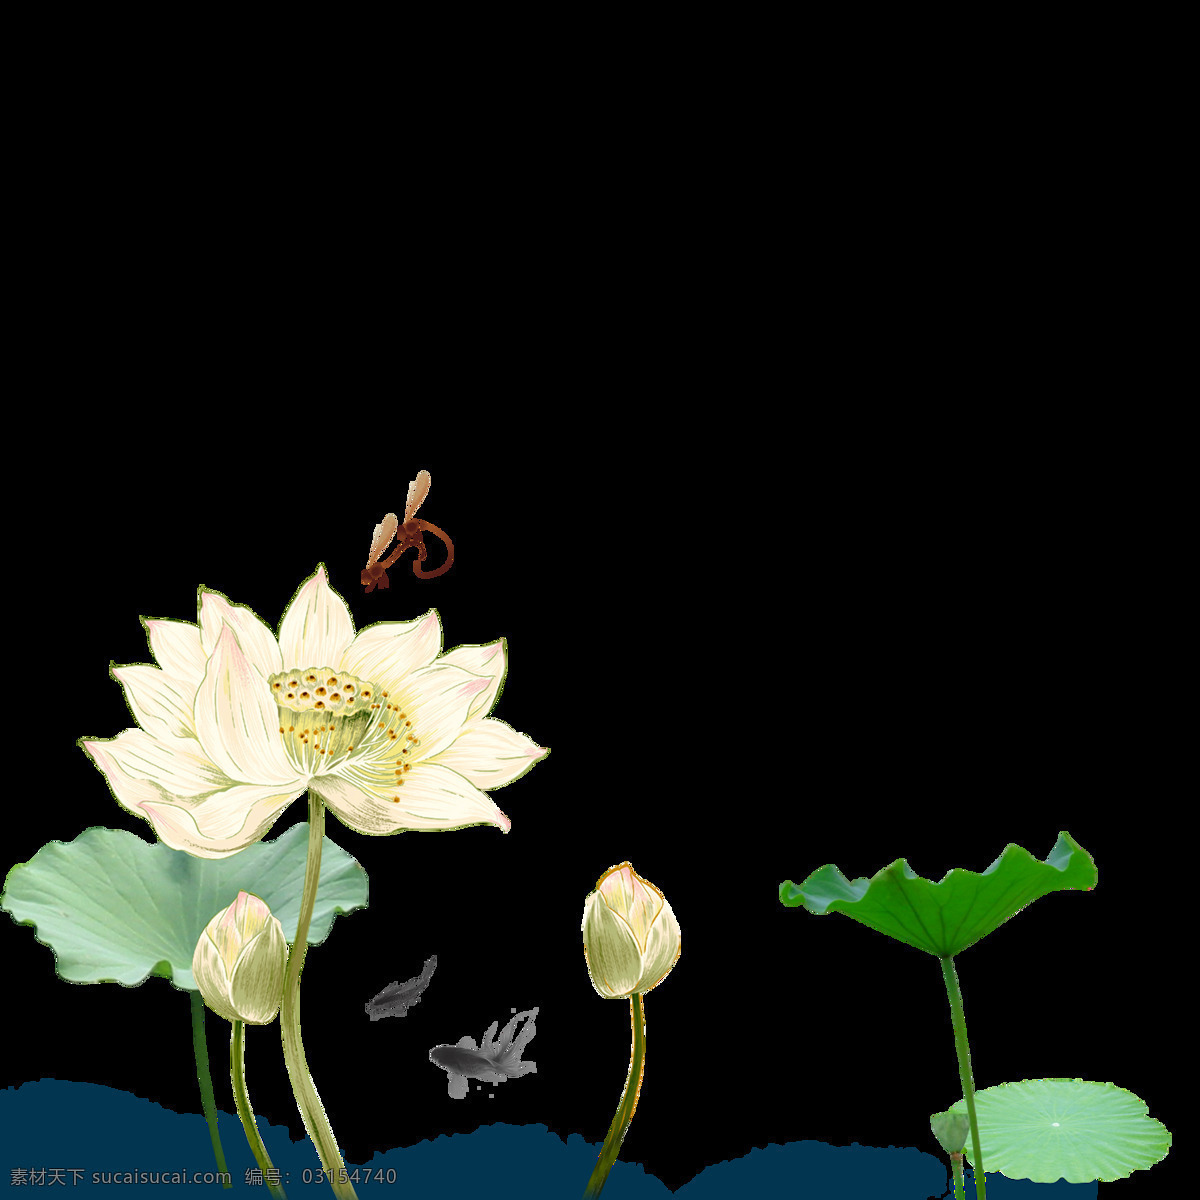 中国 风 水墨 荷花 图案 元素 边框素材 创意素材 粉色 荷花图案 荷花元素 花草图案 花朵 花朵图案 花纹图案 莲蓬 时尚图案 手绘荷花 水彩荷花